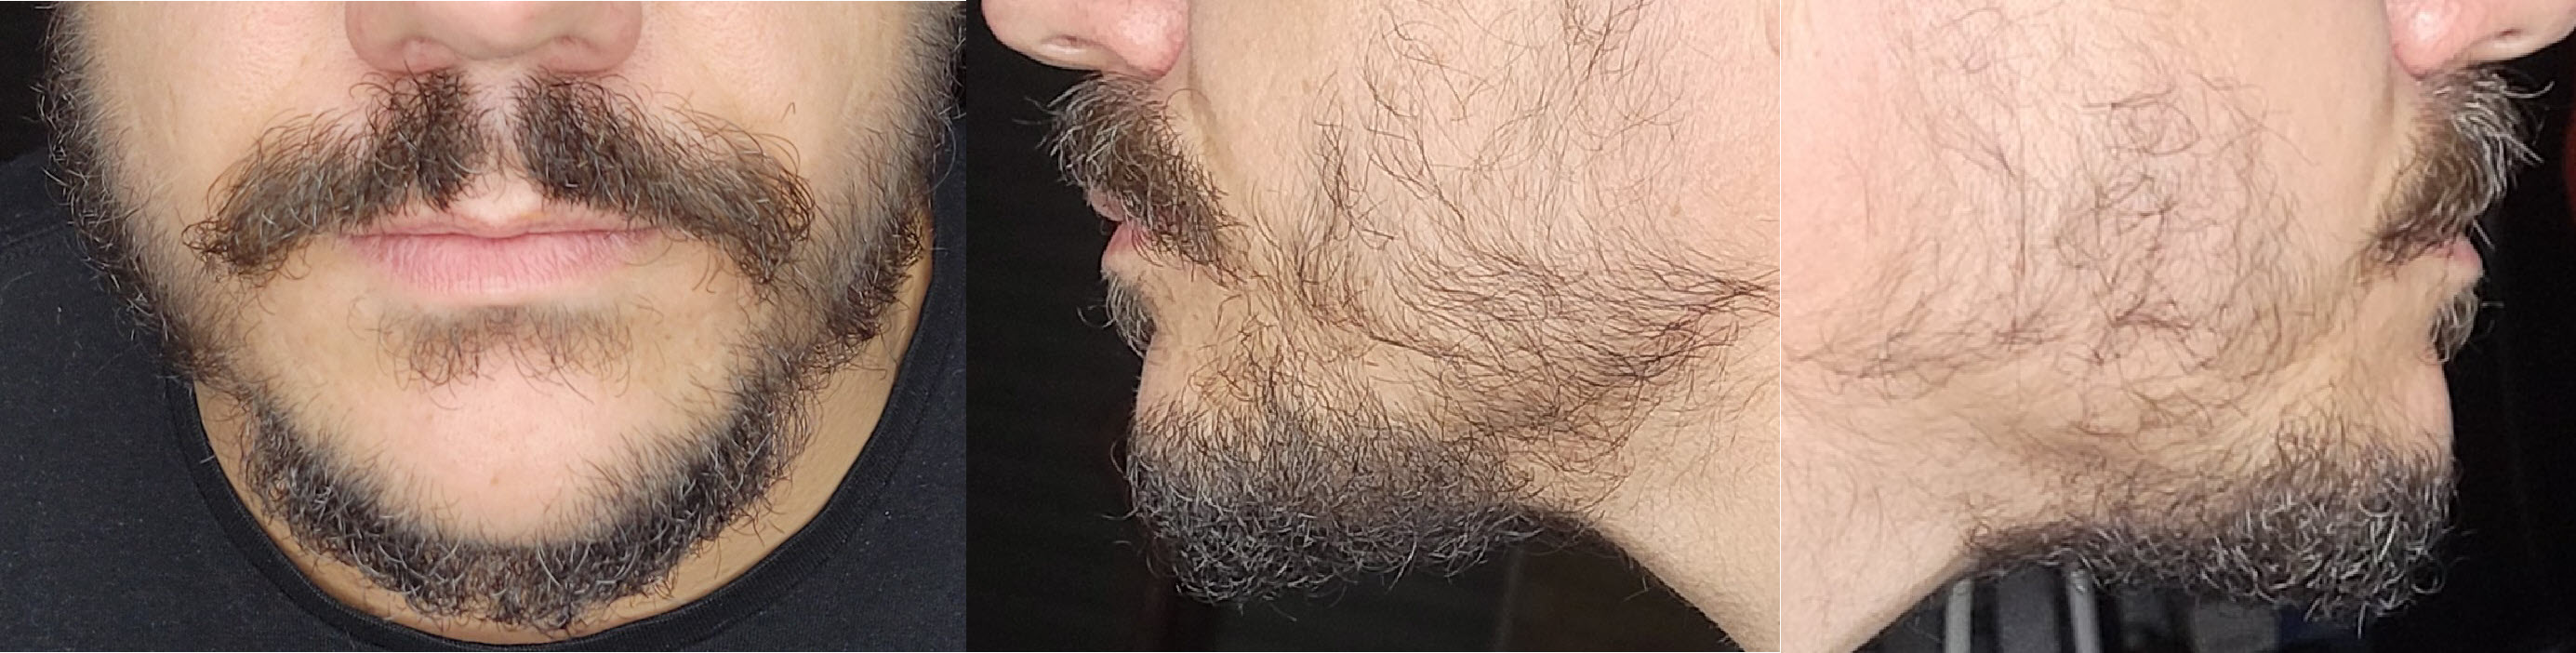 blog/growing-a-beard/2021-05-15.jpg